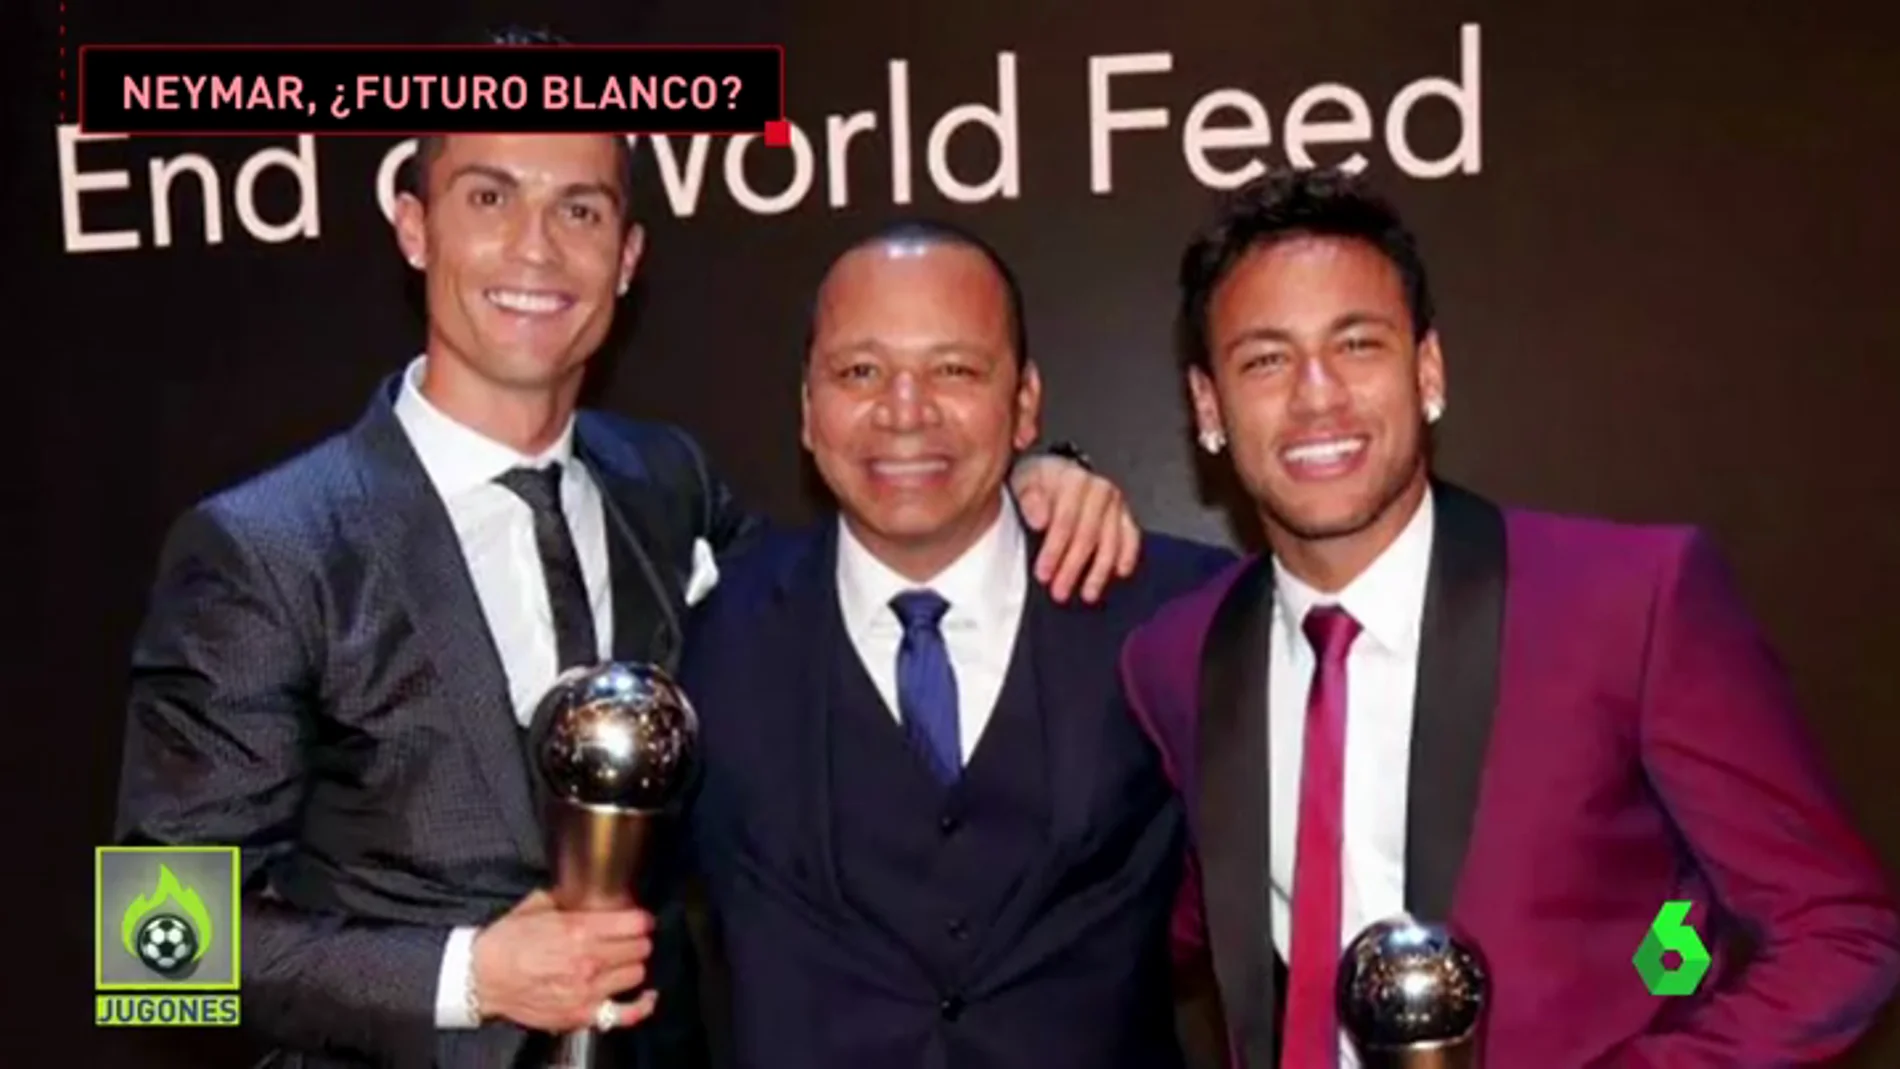 ¿Acabará Neymar en el Real Madrid? La mala relación con Emery abre la posibilidad